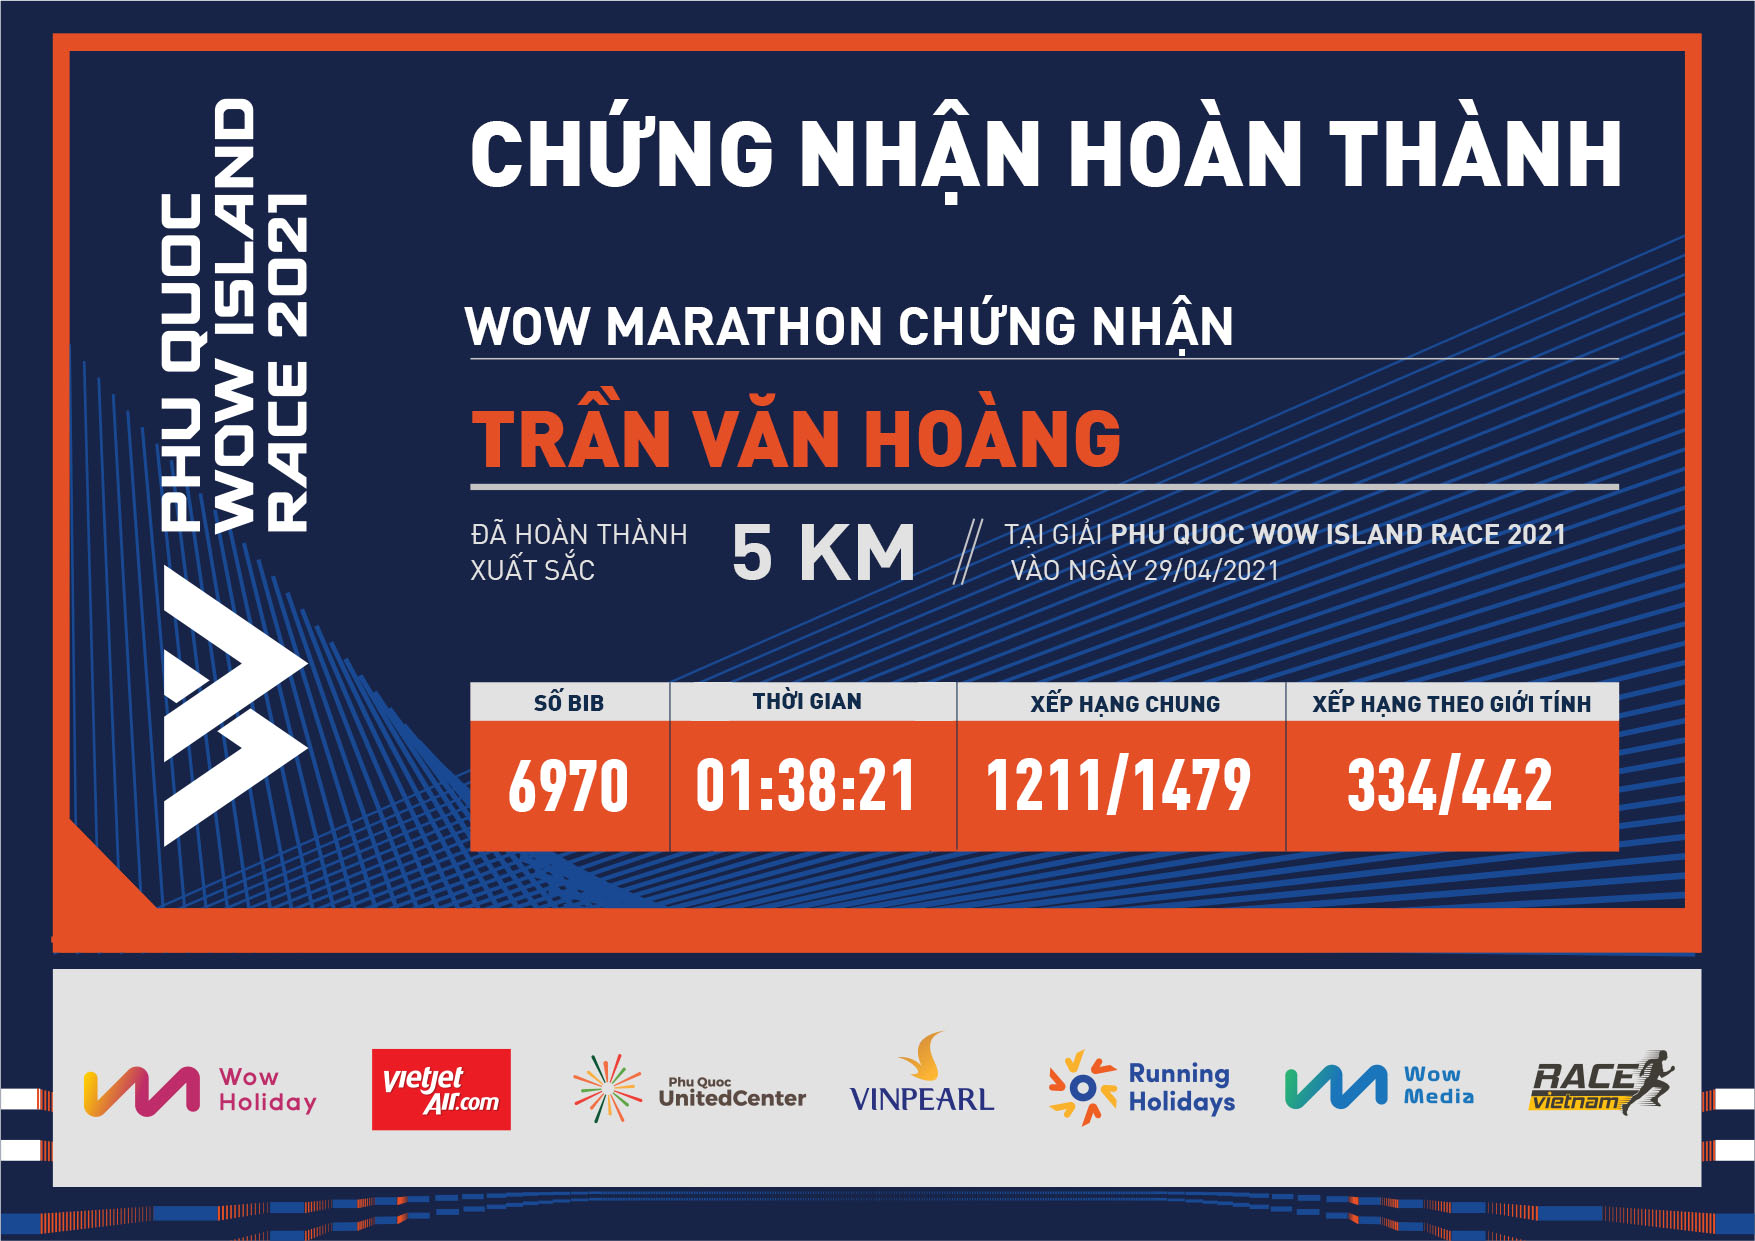 6970 - Trần Văn Hoàng